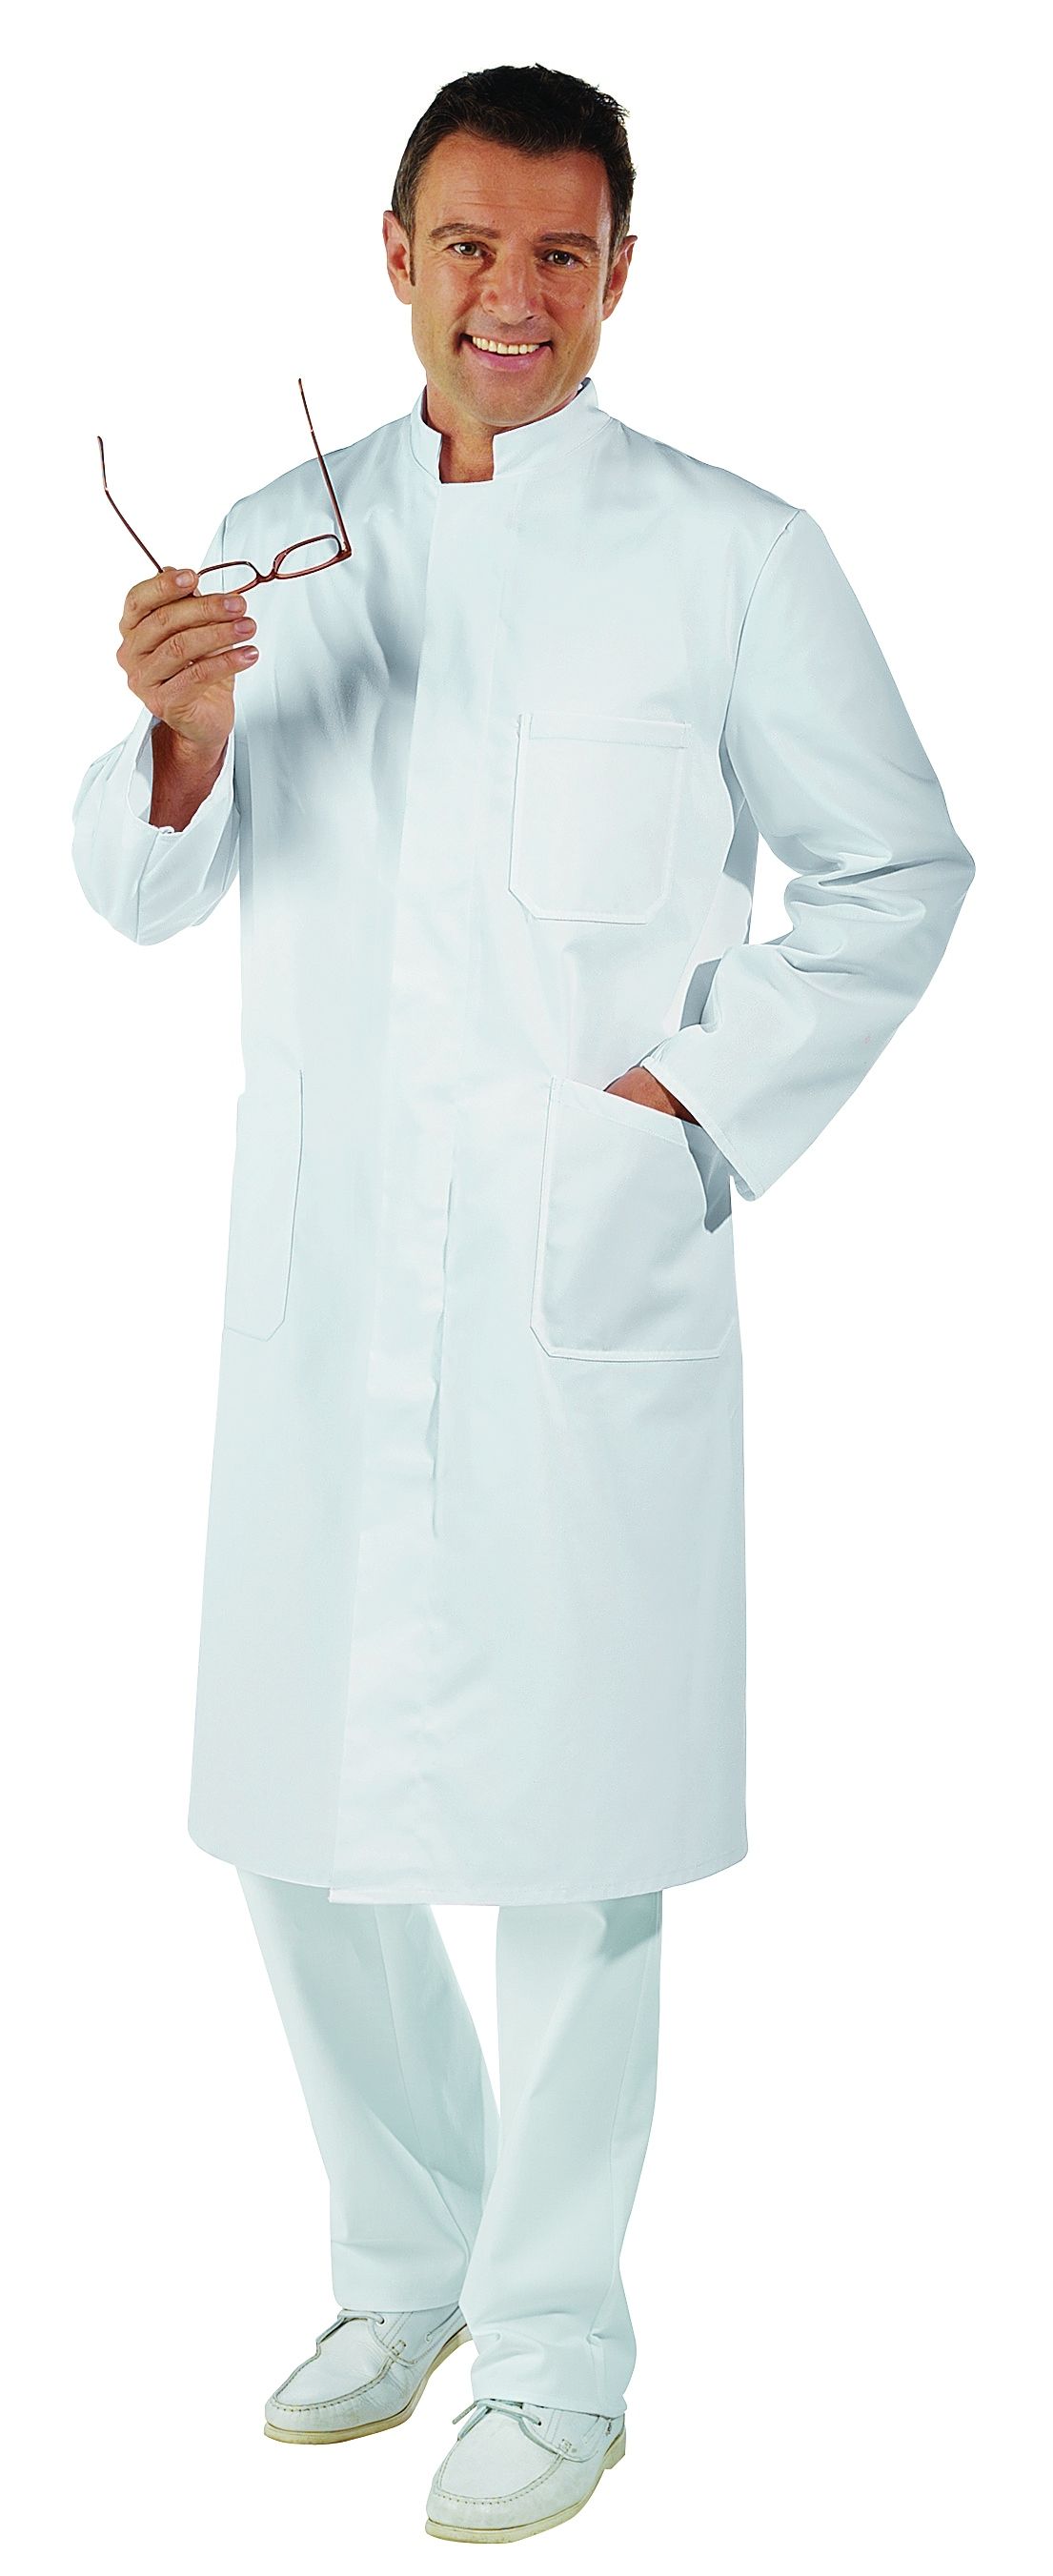 He.-Arztkittel lg.Arm weiß 65%Polyester/35%Baumwolle ca. 215g/m²